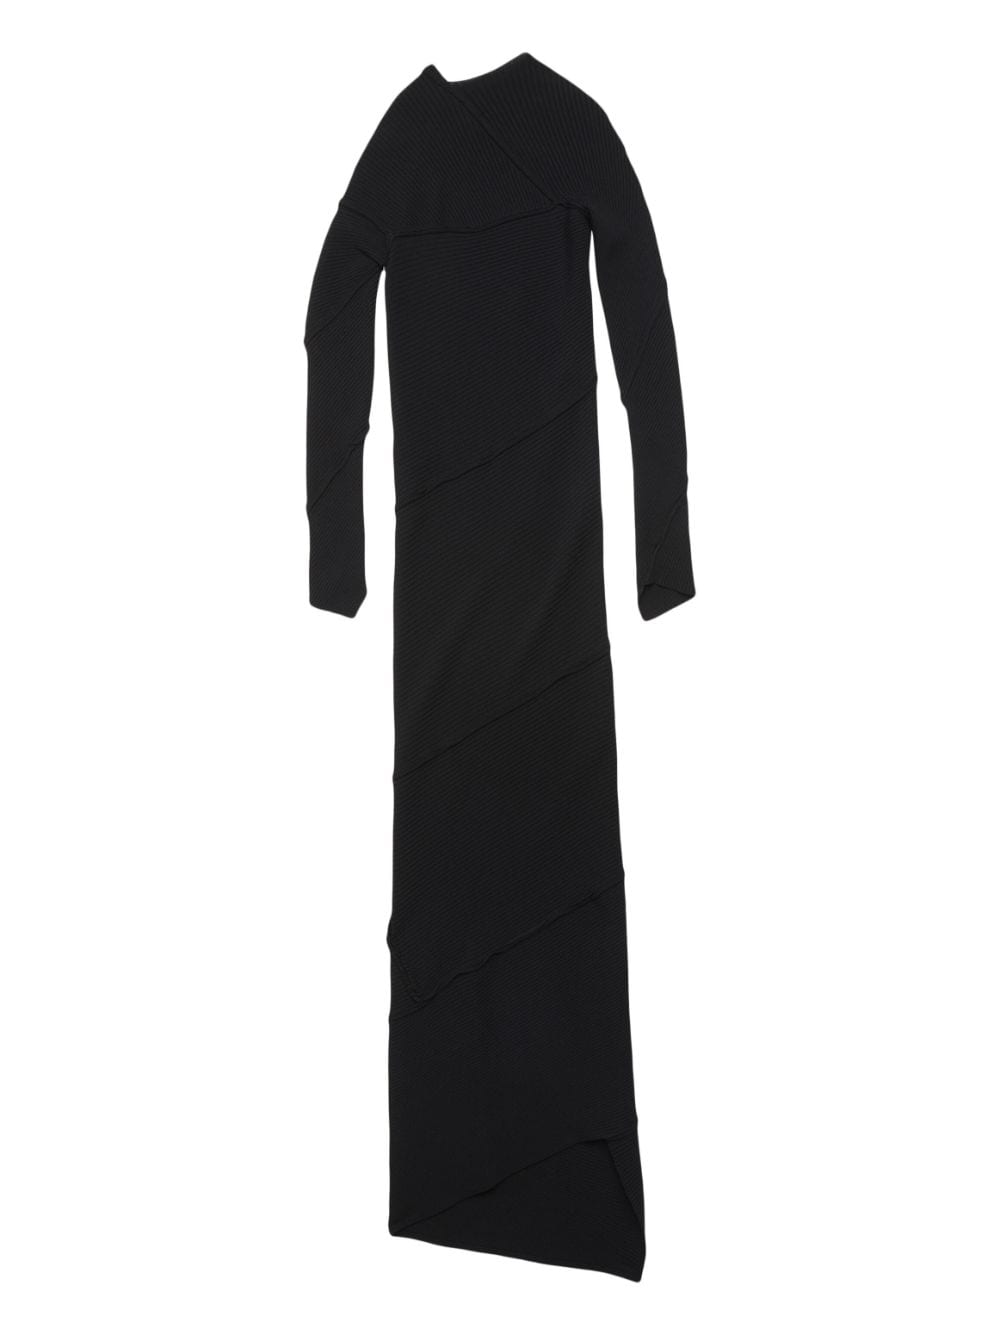 黑色斜襯領和下擺的凹凸紋長裙